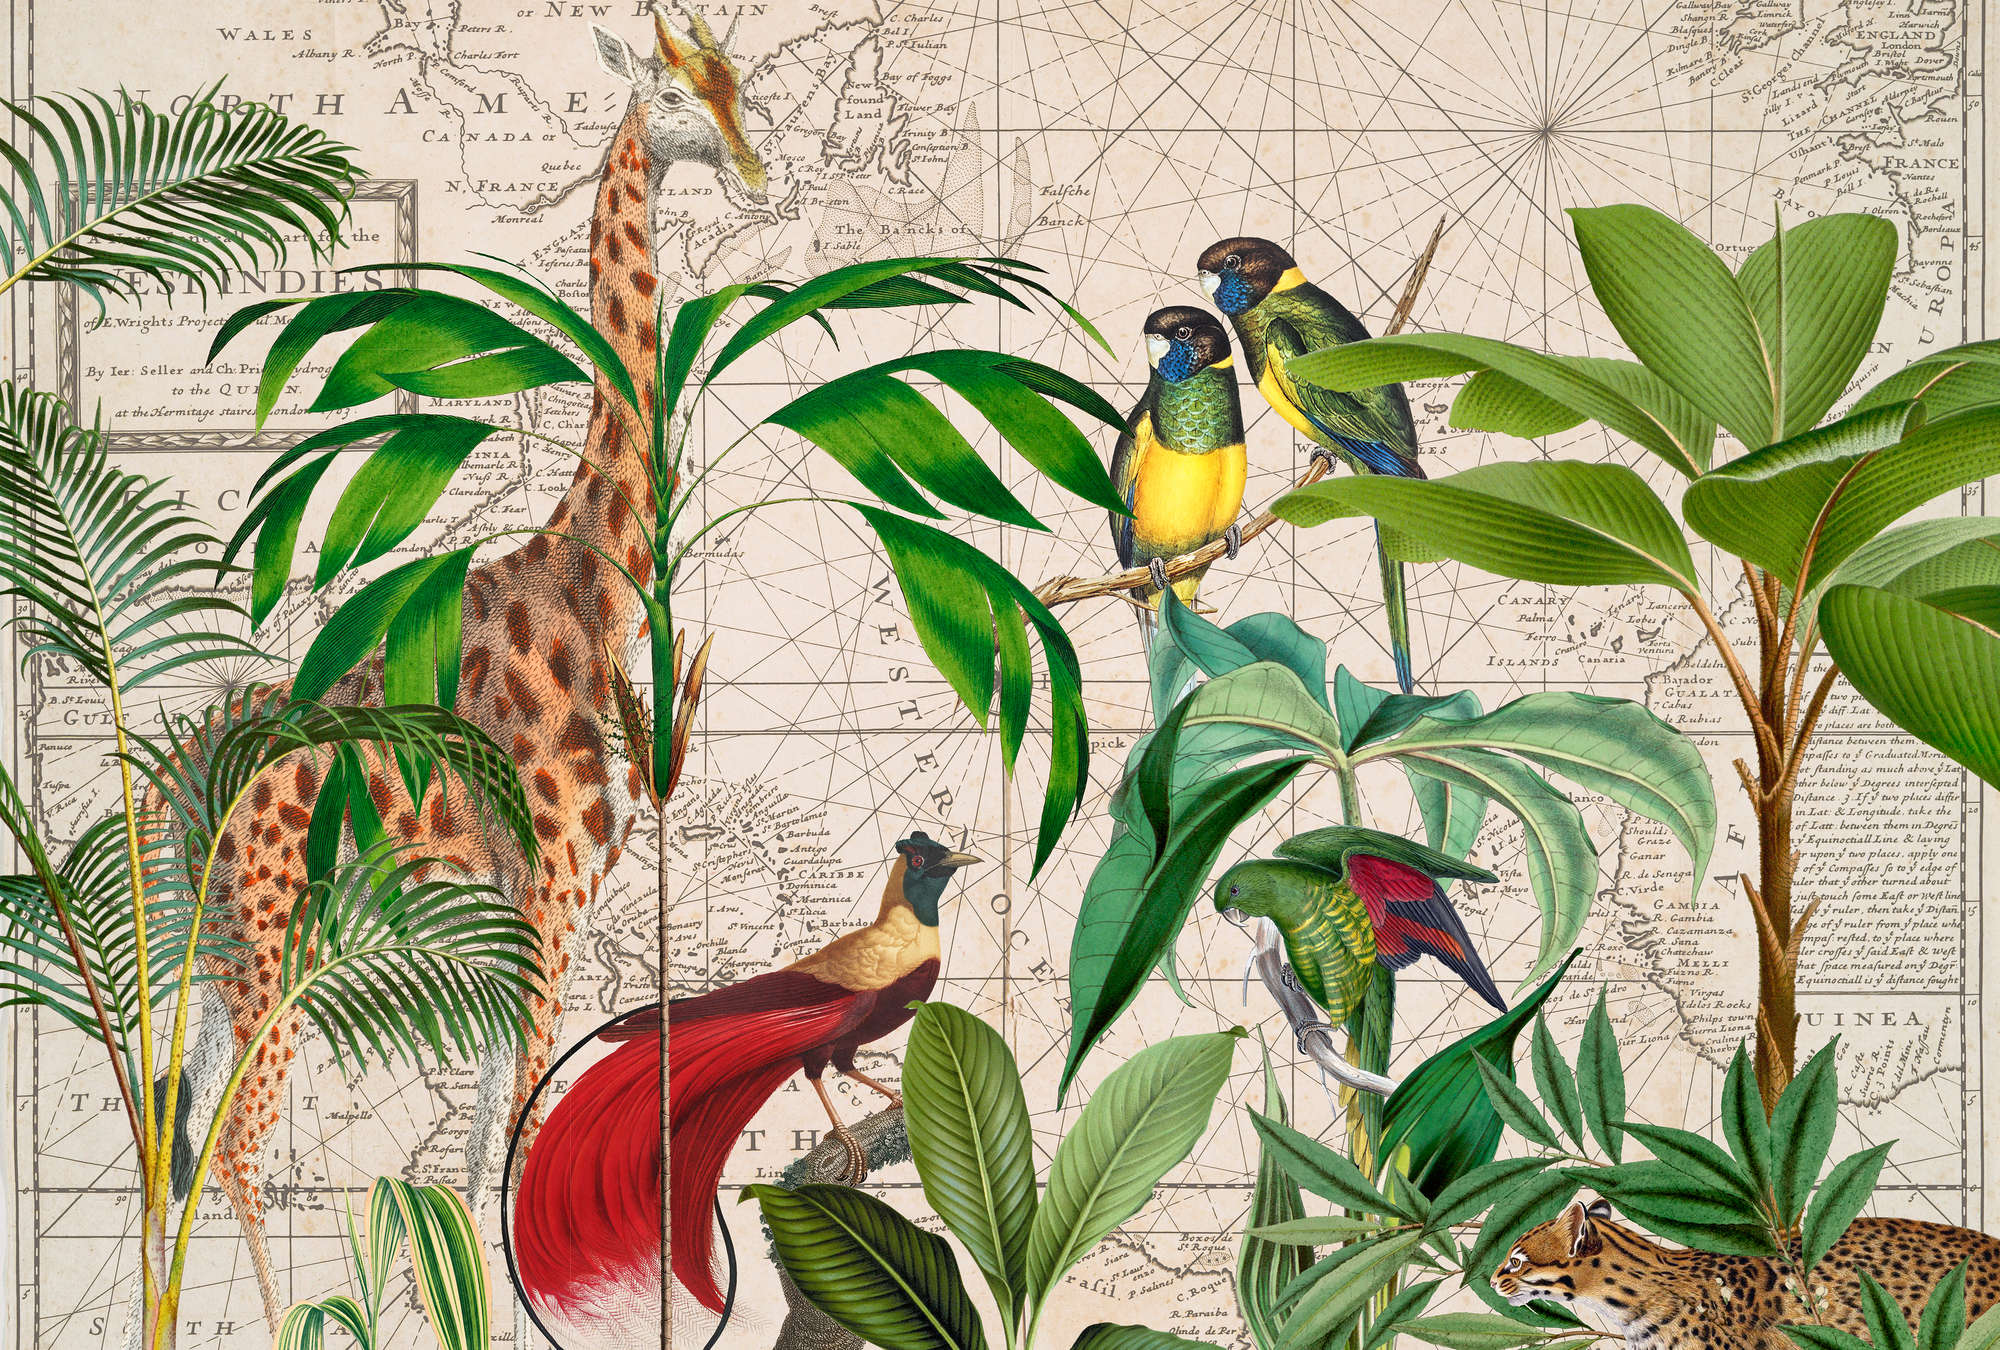             Wildtier Fototapete Vögel & Giraffen mit Retro Landkarte im Collage Stil
        